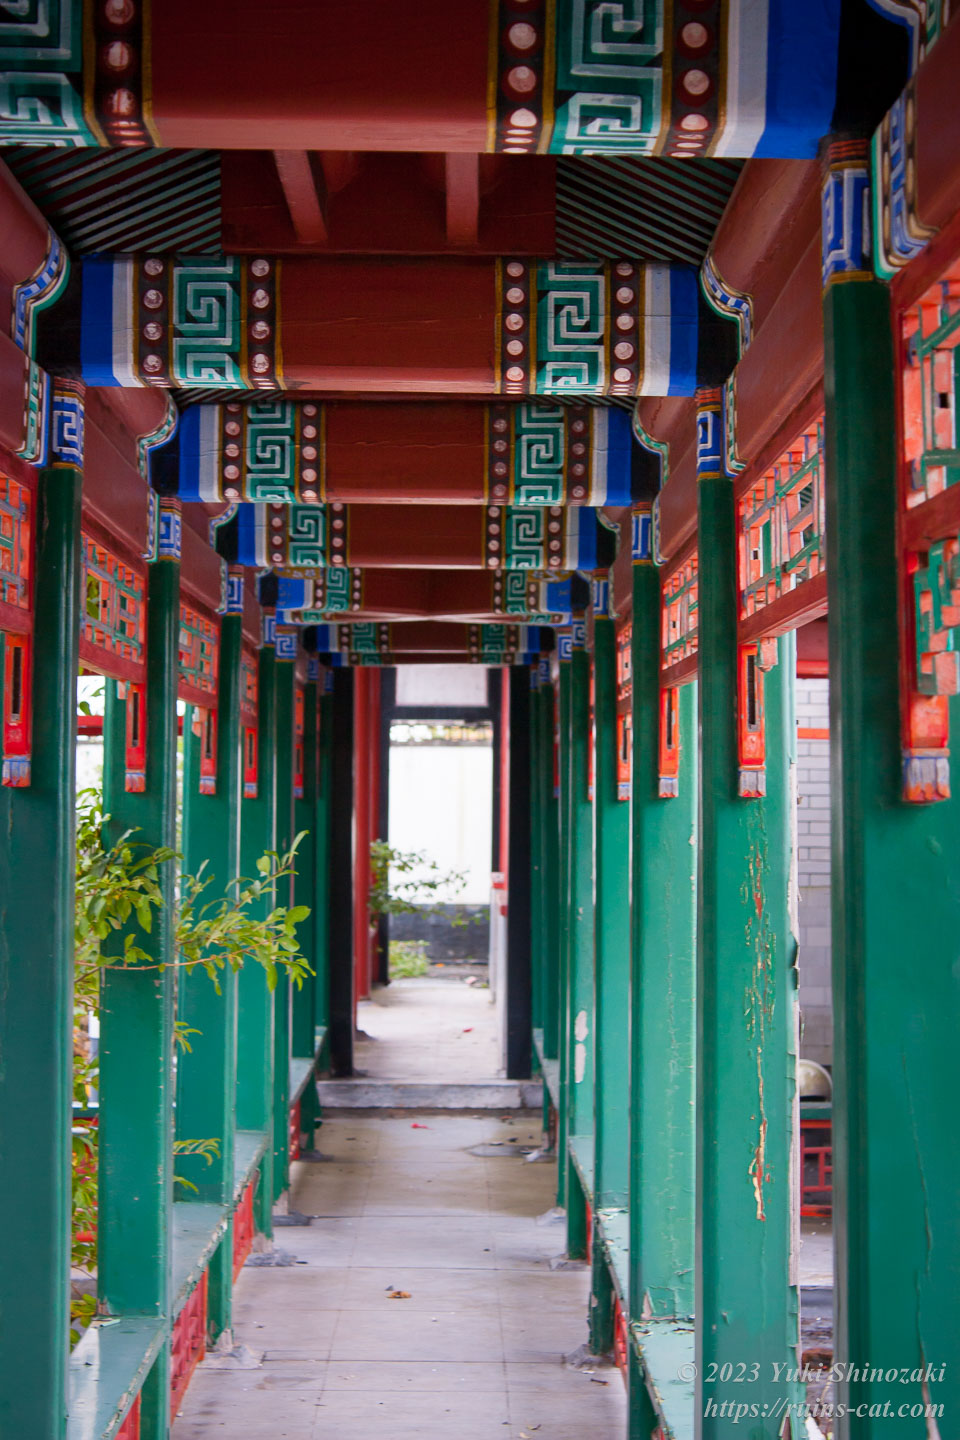 渡り廊下の屋根を支える柱は赤や青や緑で塗られている